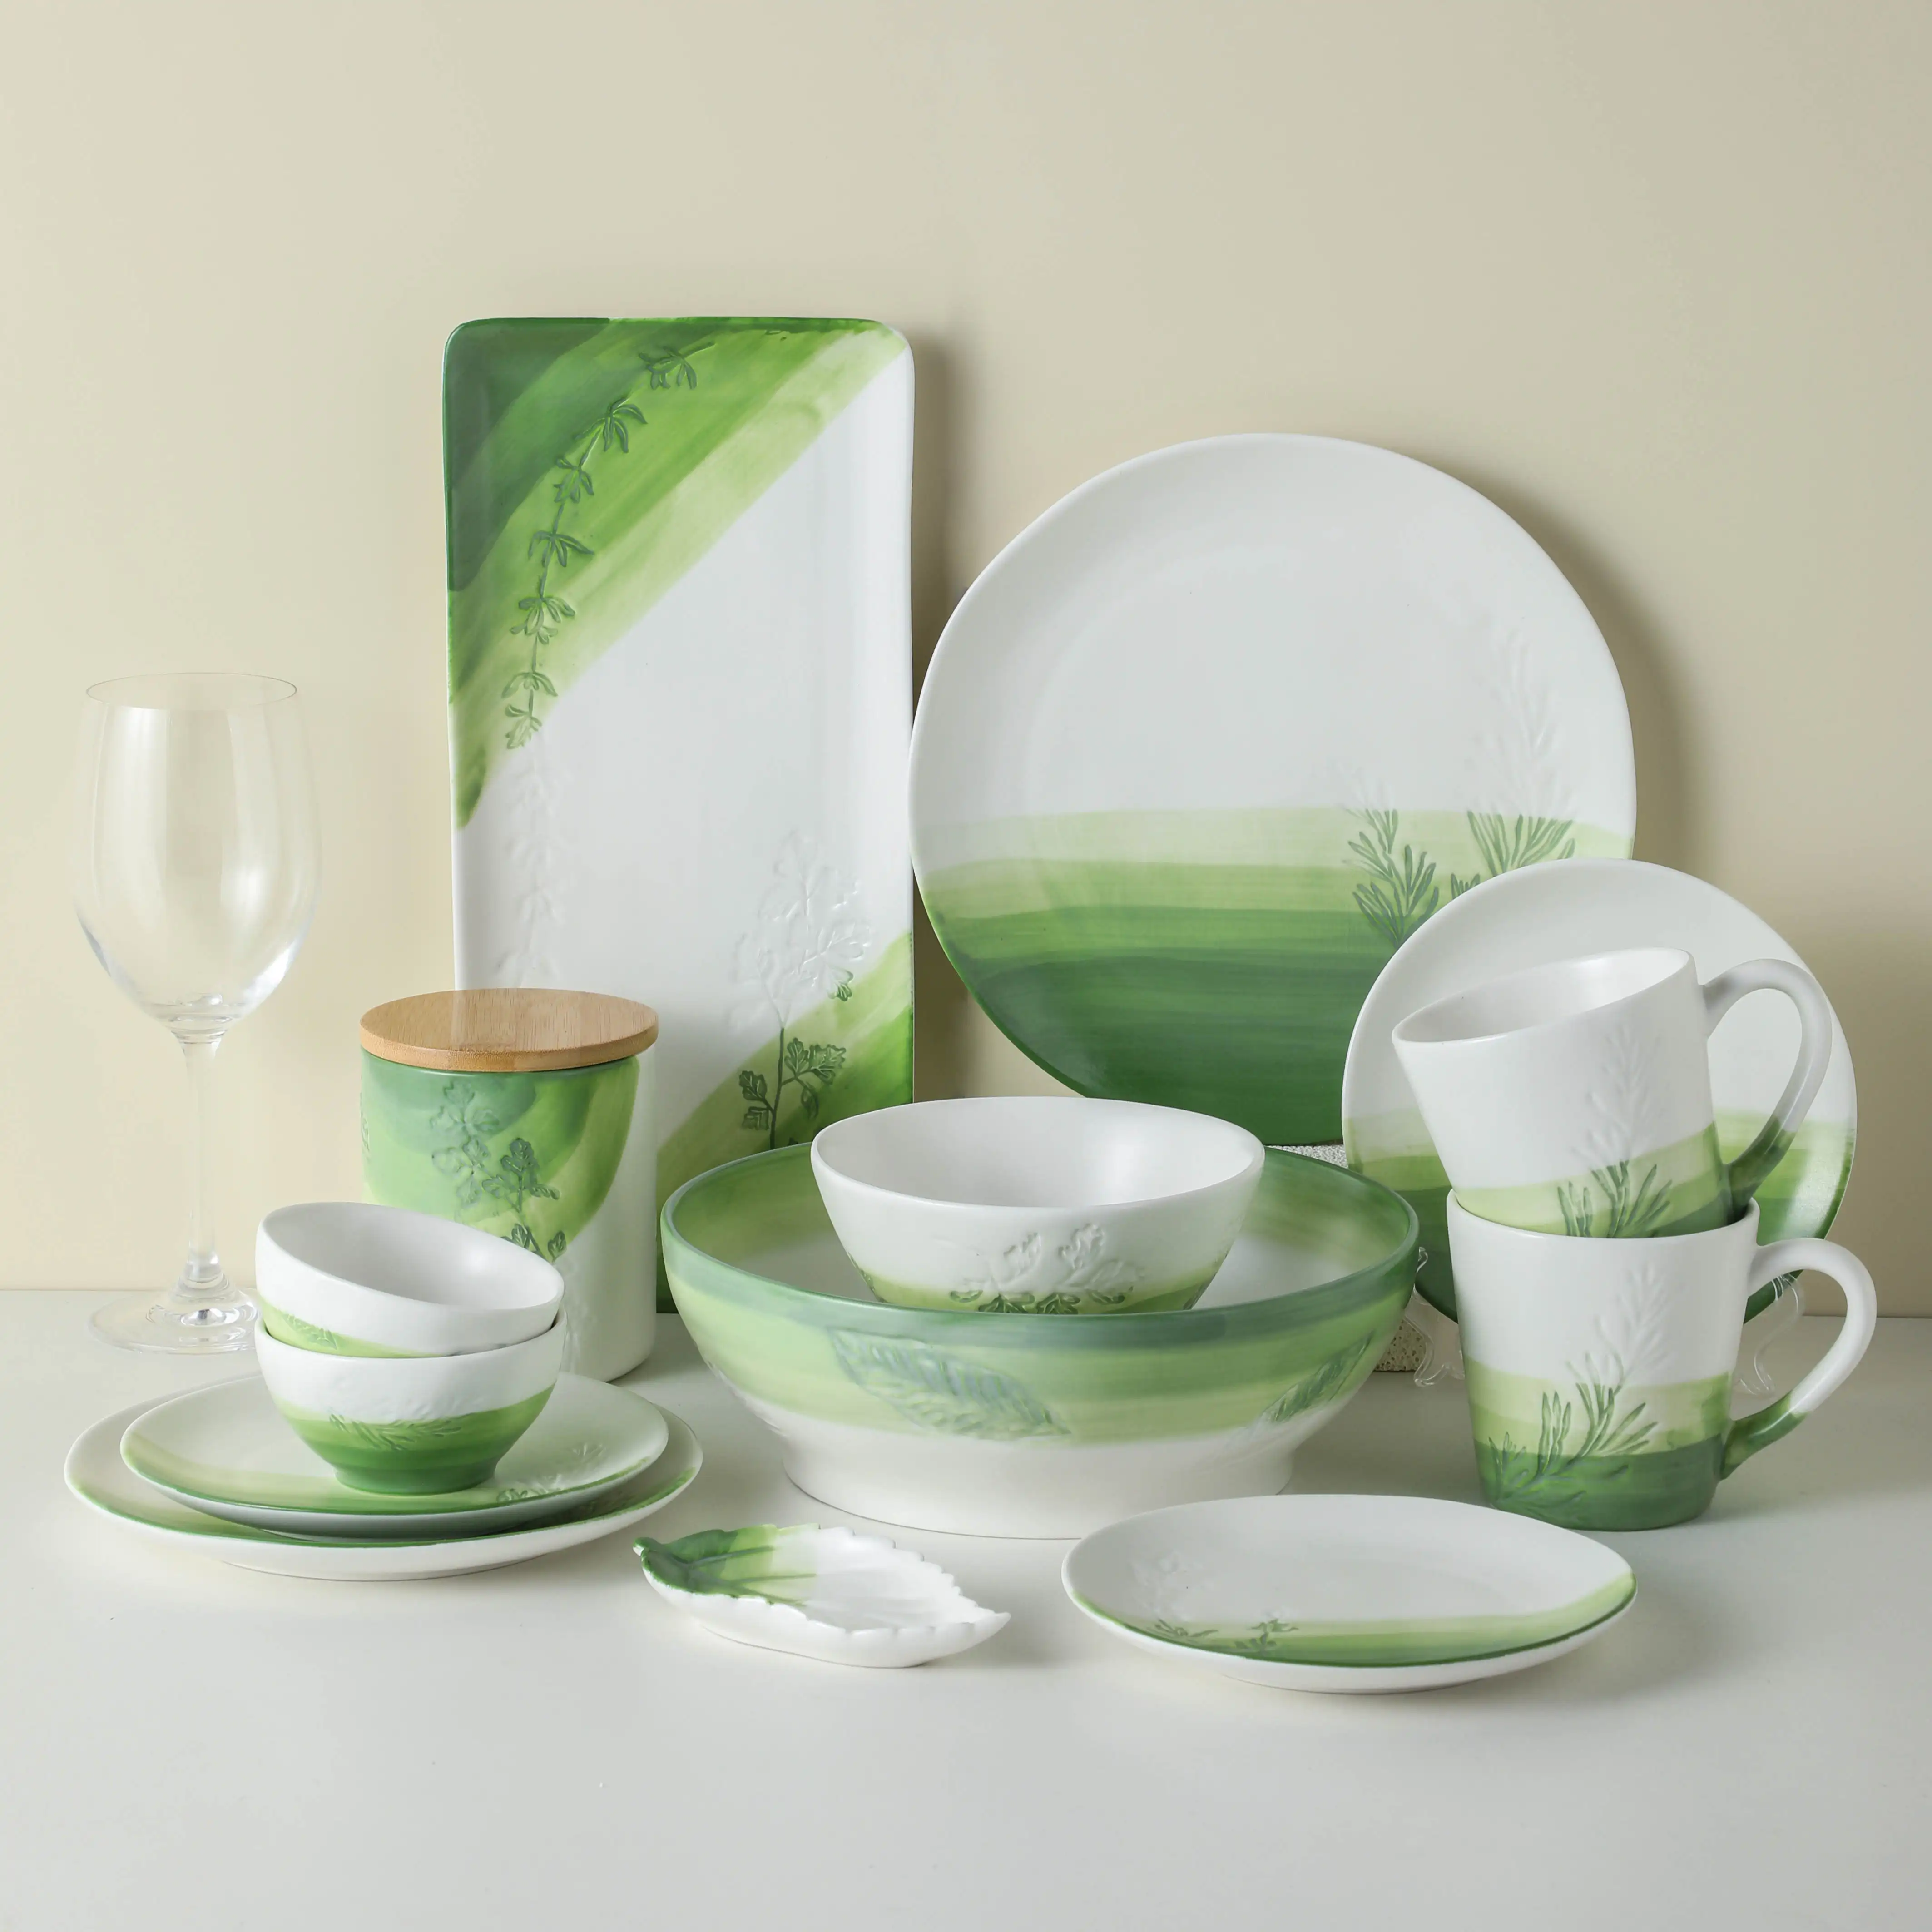 Emboss design ombre surface wholesale bulk hotel home restaurant plate sets dinnerware nordic ceramic dinner set